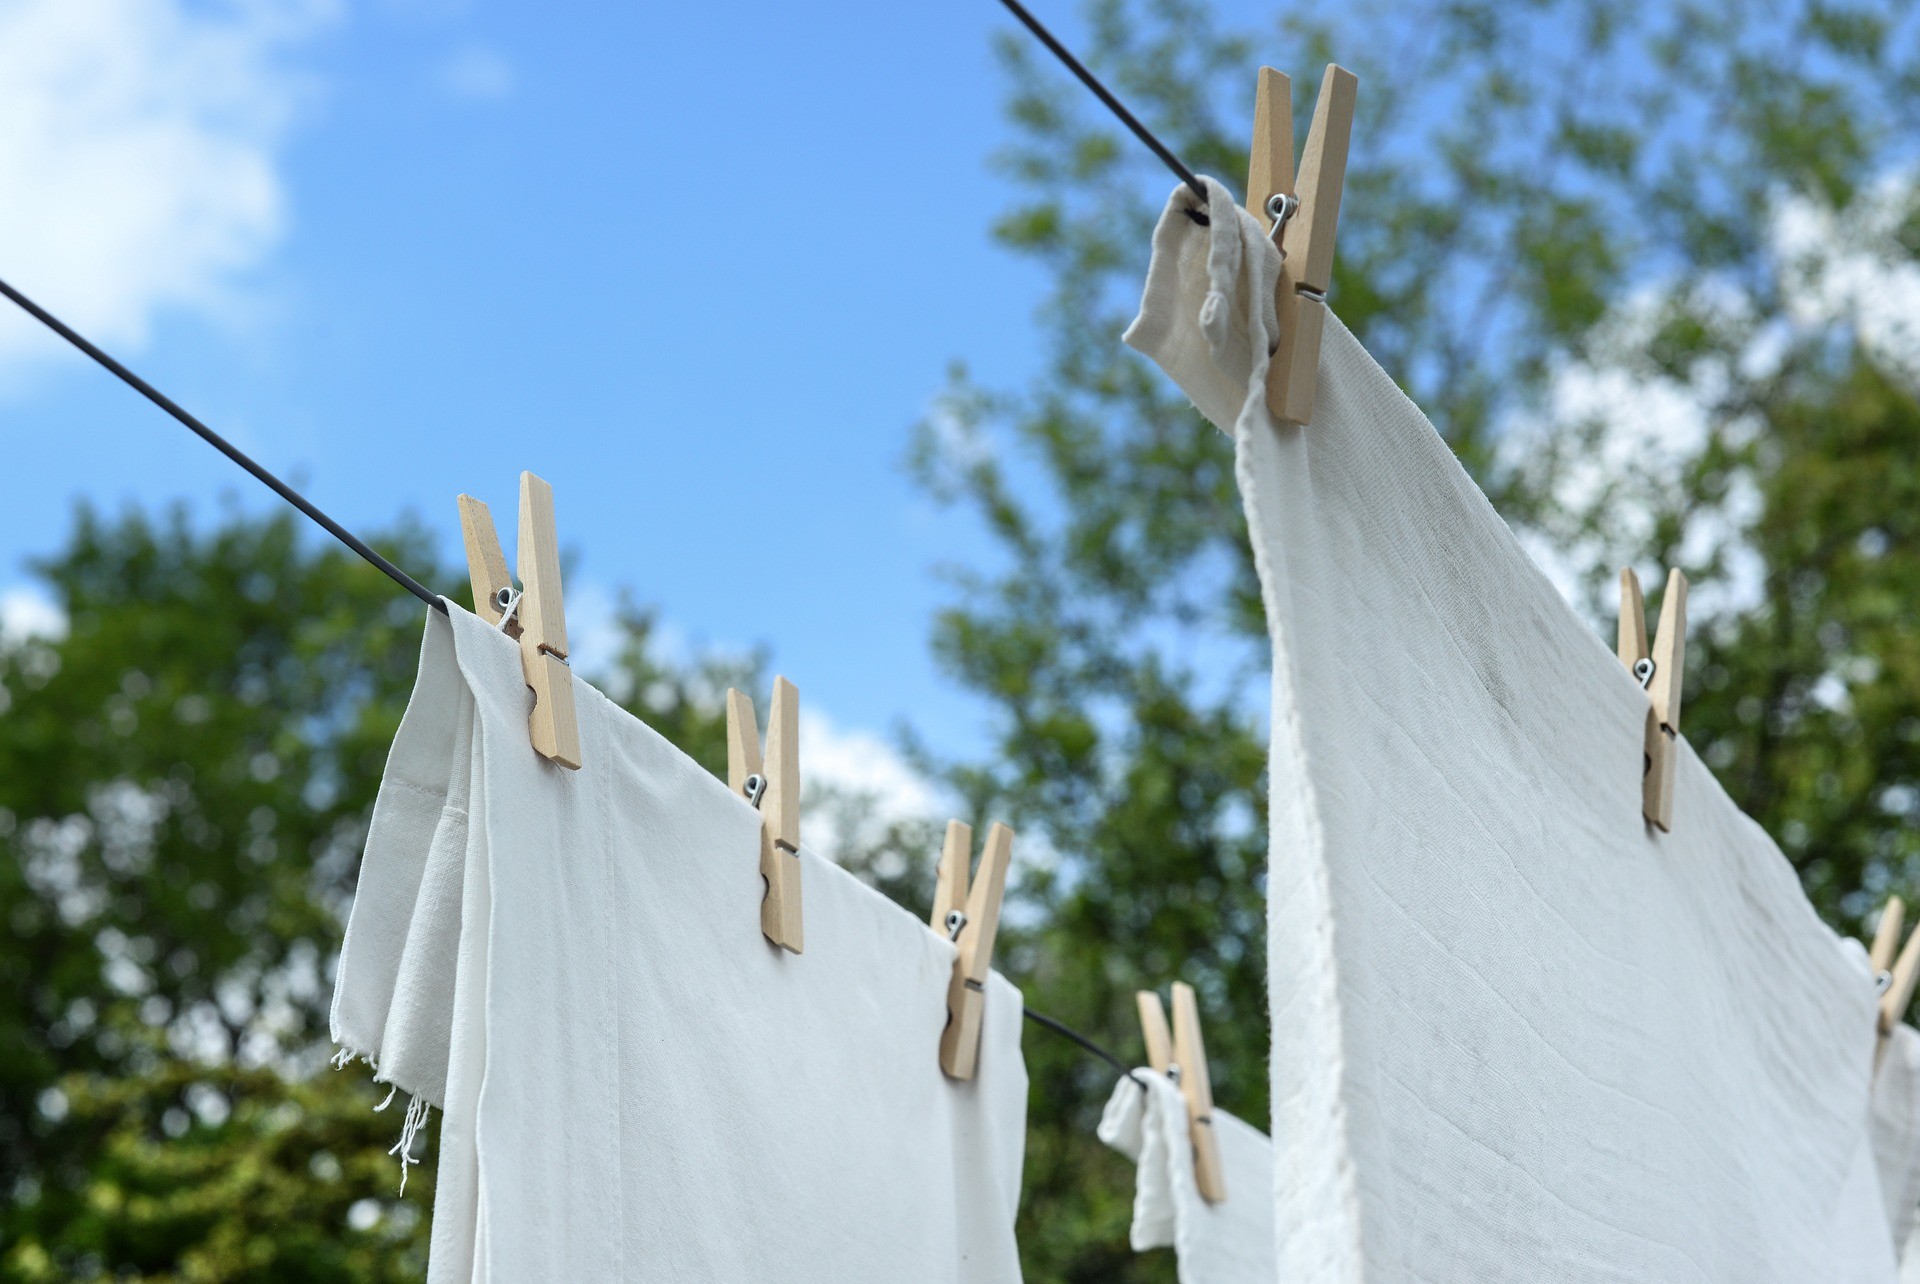 Wäsche im Winter draußen trocknen (Quelle: Pixabay.com)